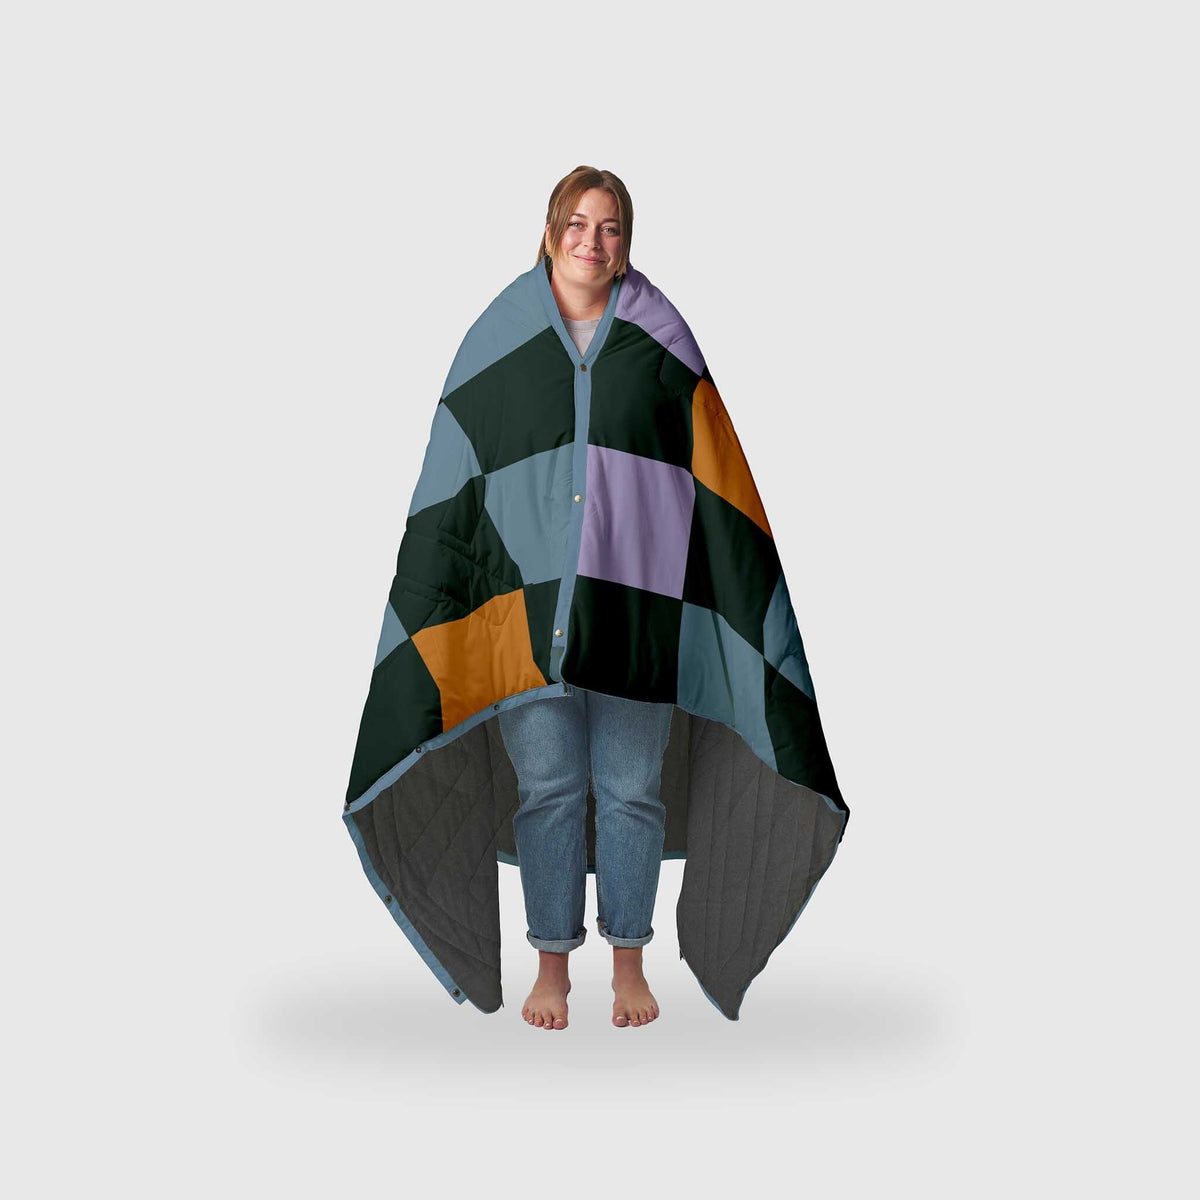 VOITED Fleece Outdoor Camping Blanket - Cheeckers